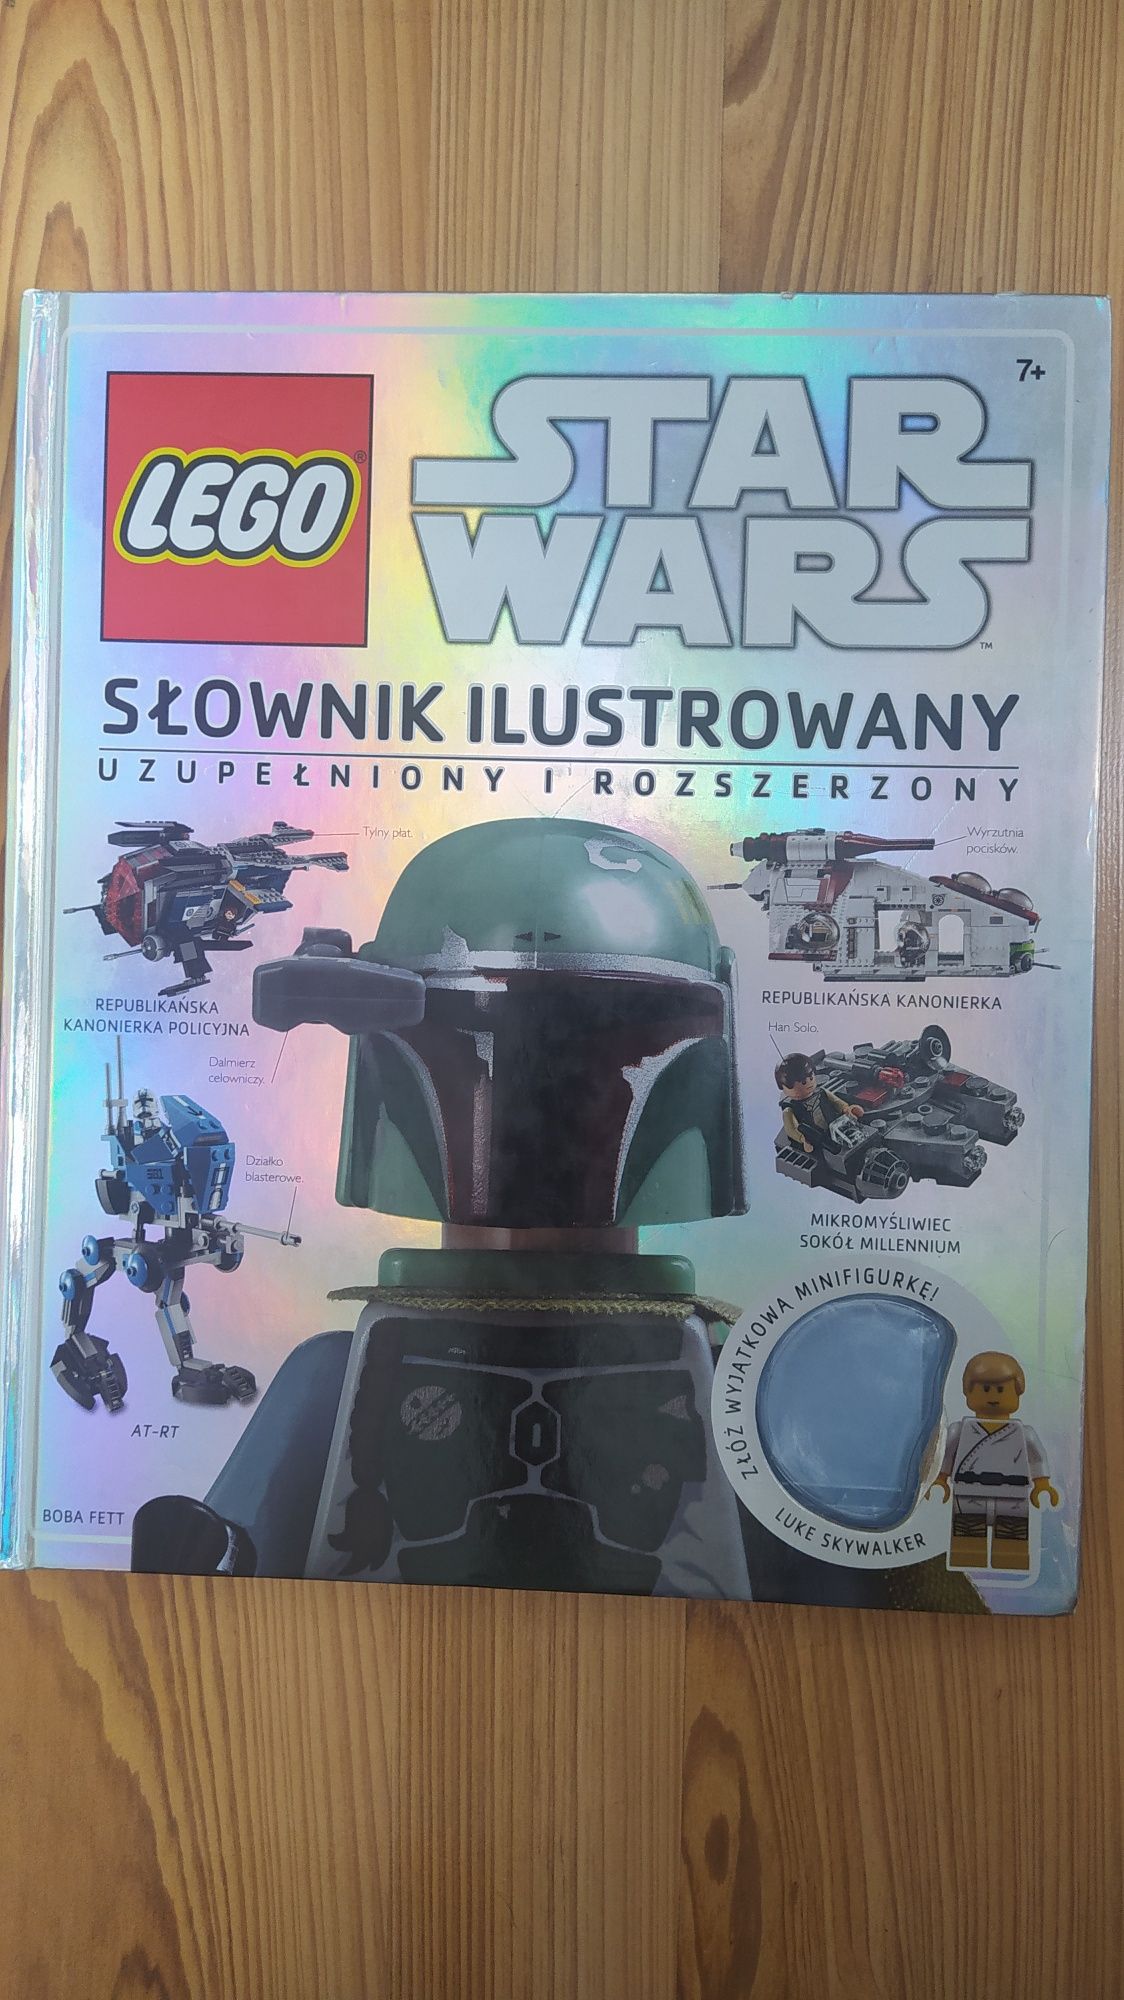 Słownik Ilustrowany Lego Star Wars